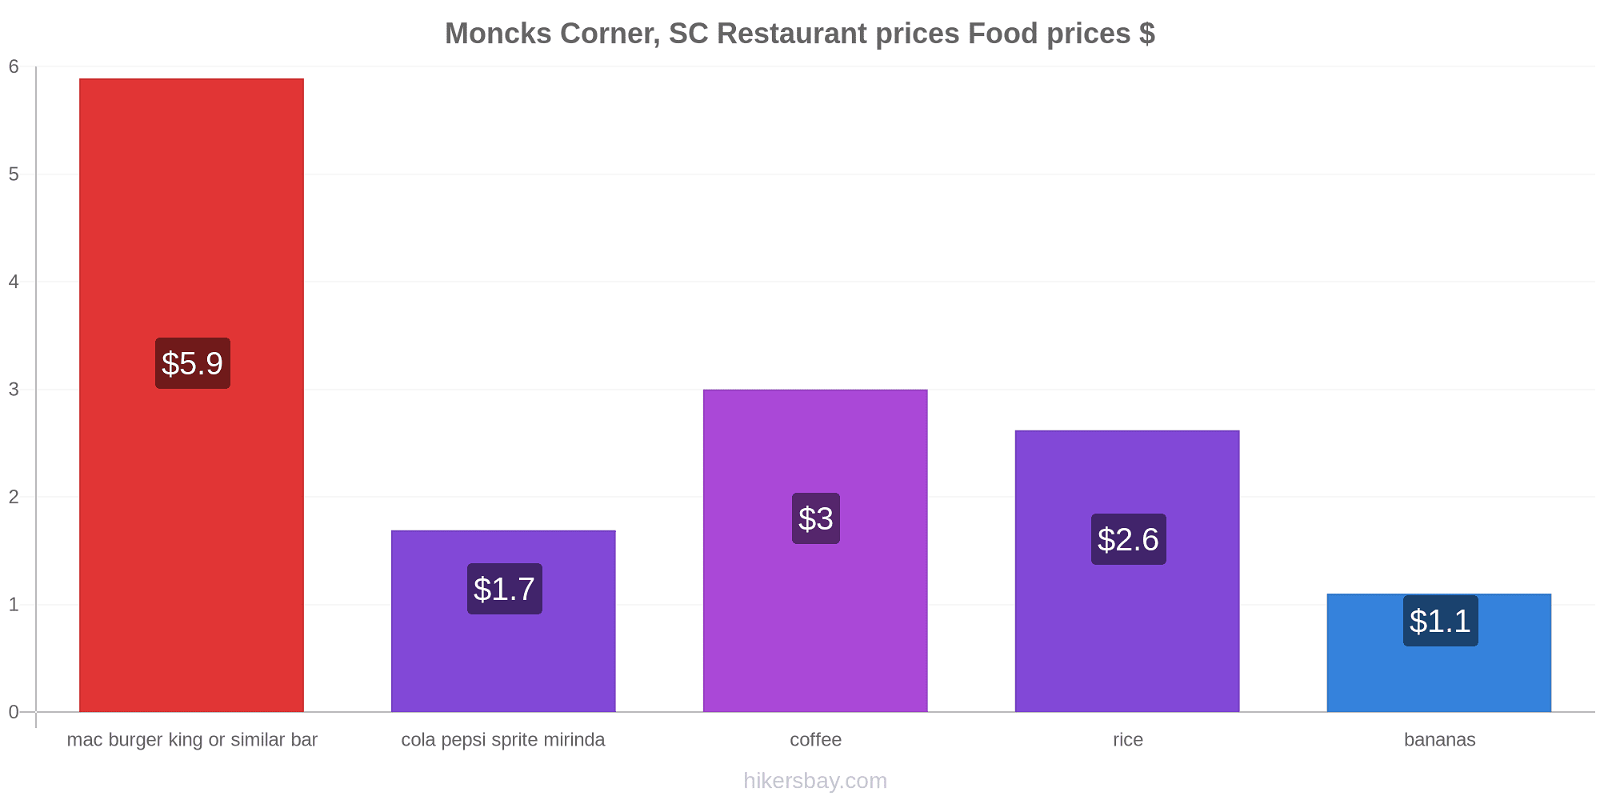 Moncks Corner, SC price changes hikersbay.com